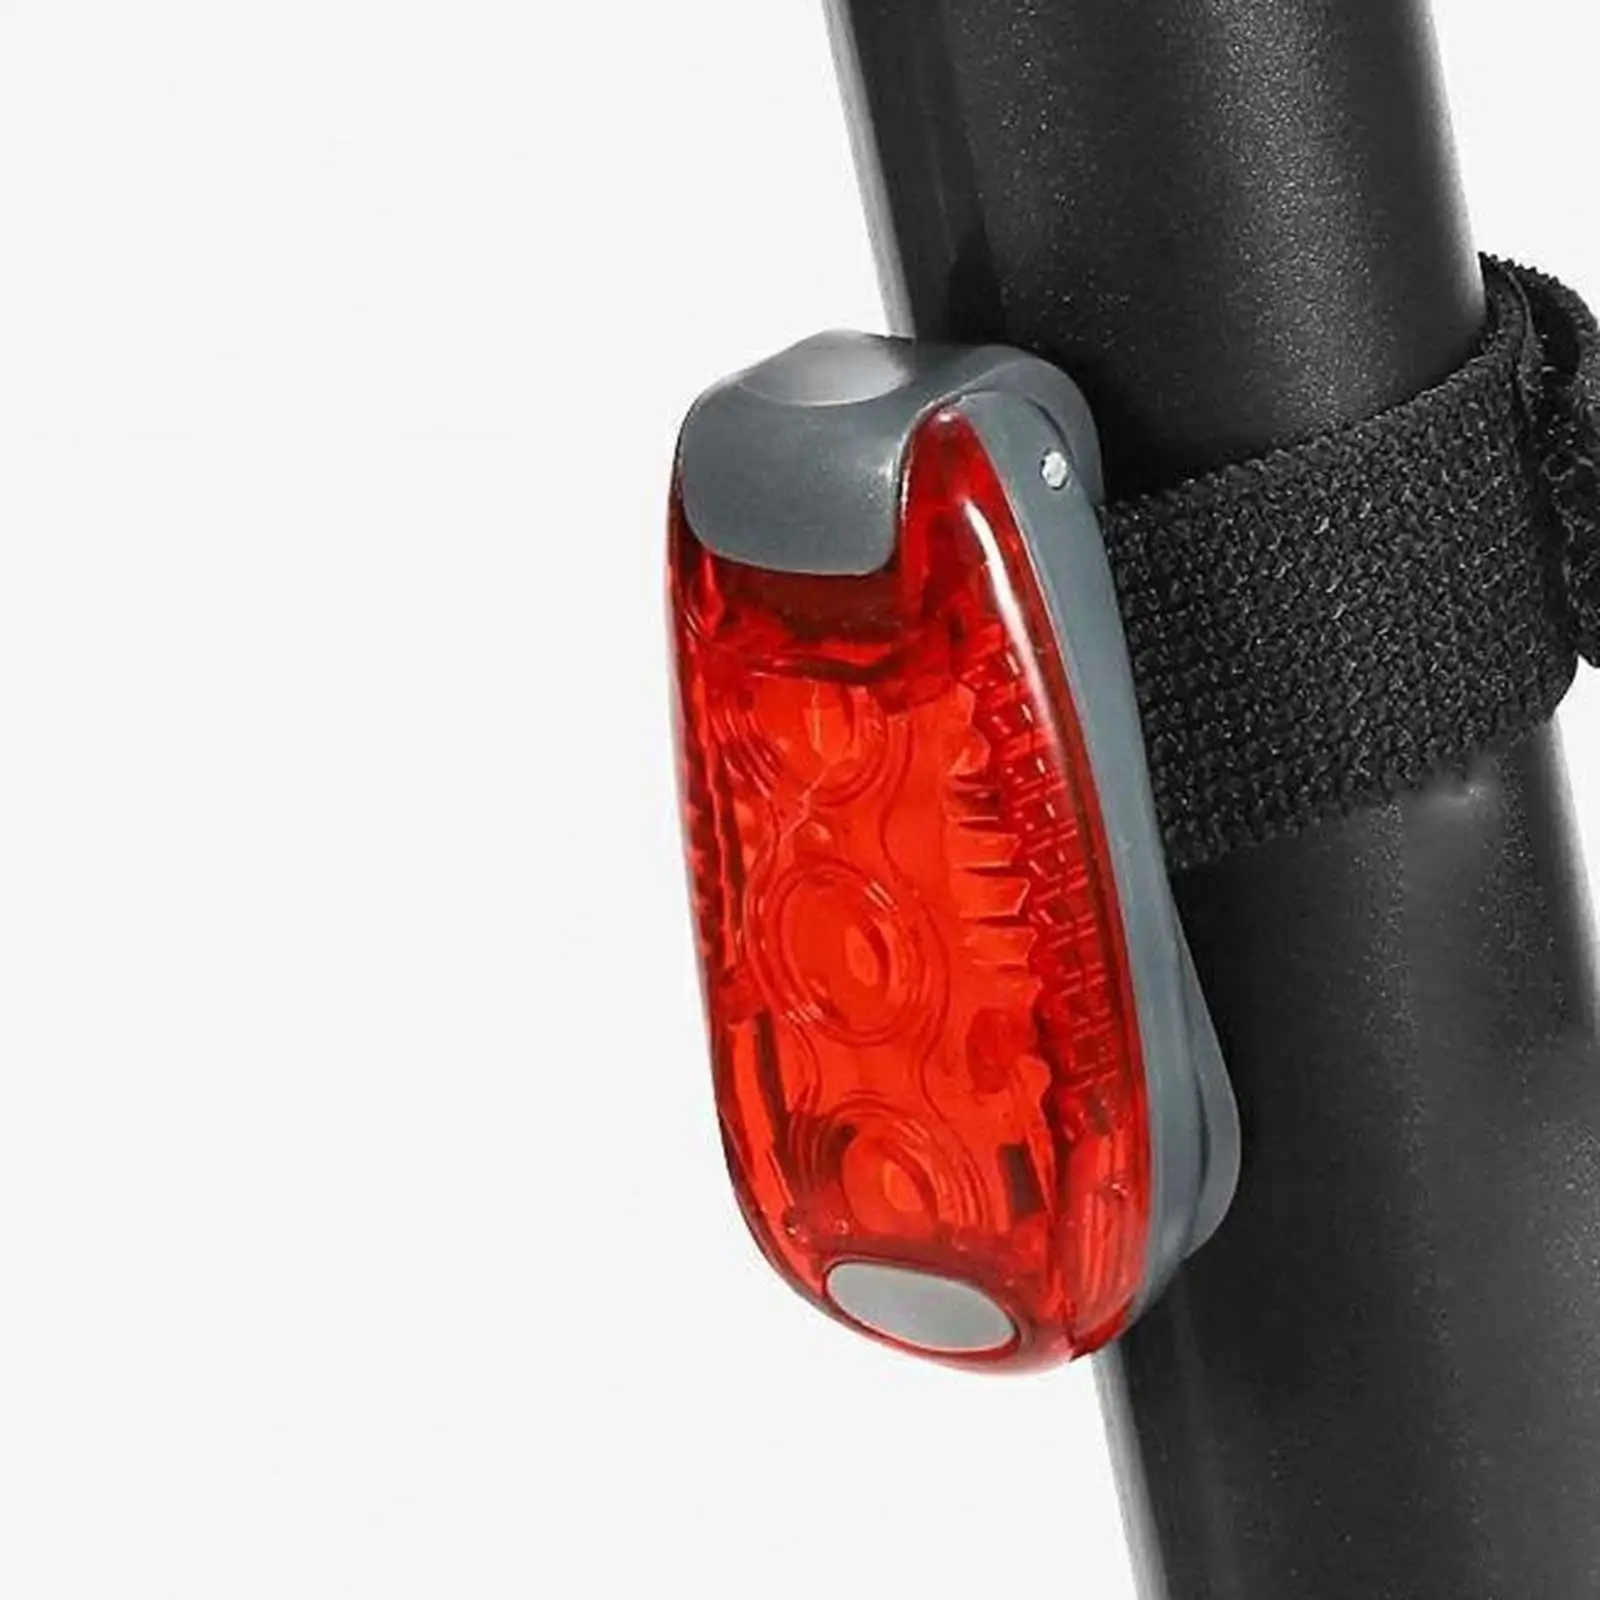 Portable LED Safety Light Bike Tail Clip On Strobe Warning Strobe Lights Bike Light Flashlight for Bike Dogs Runners Kayak MTB